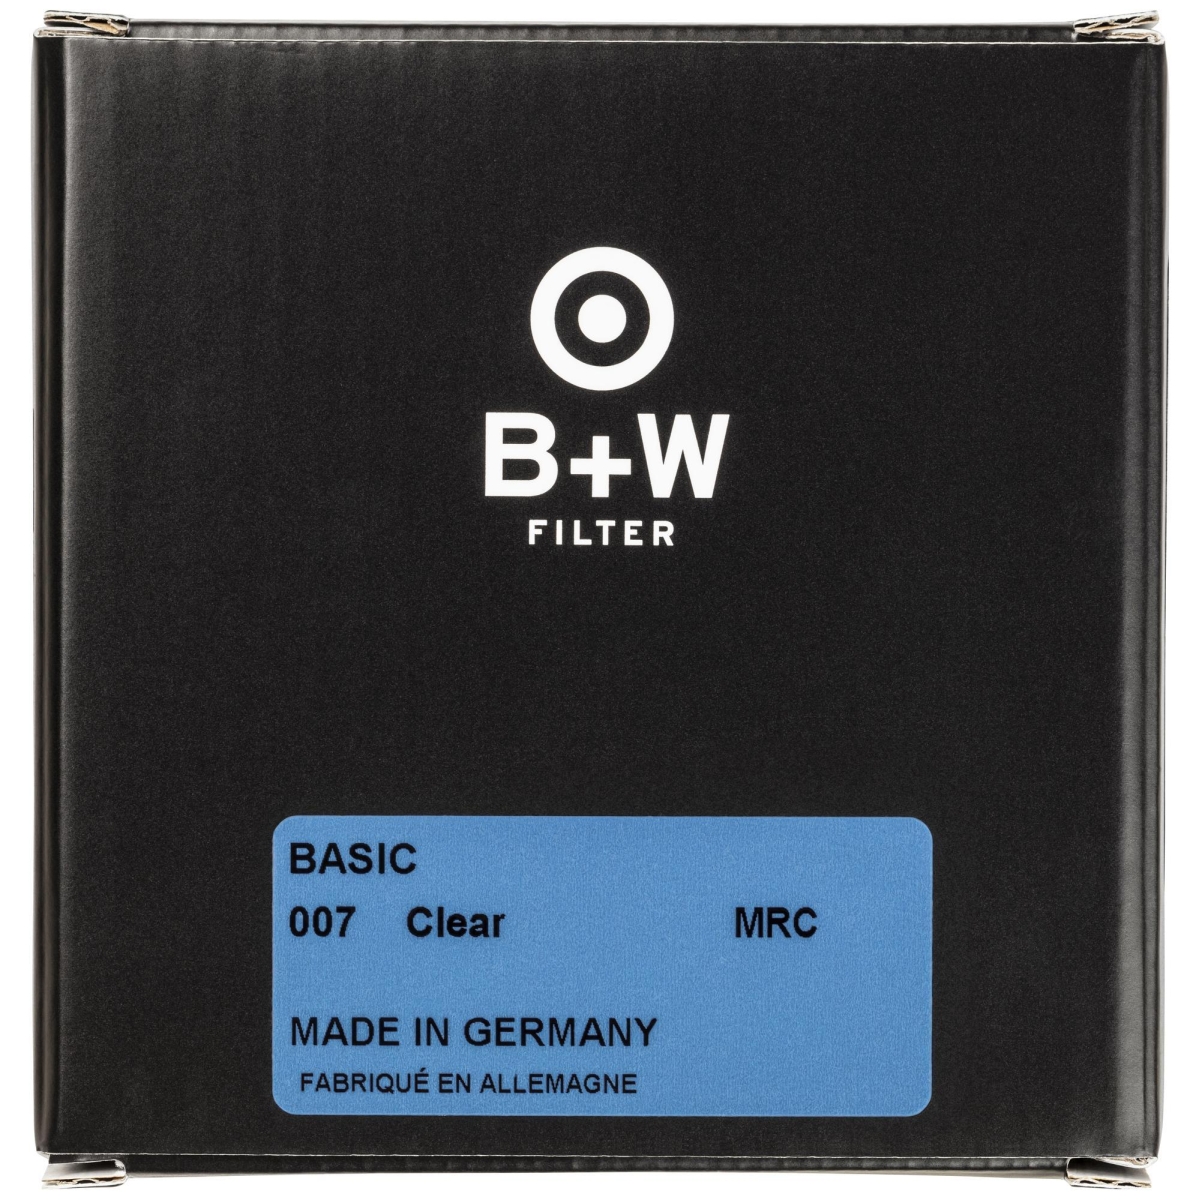 B+W Clear Filter 55 mm MRC Basic